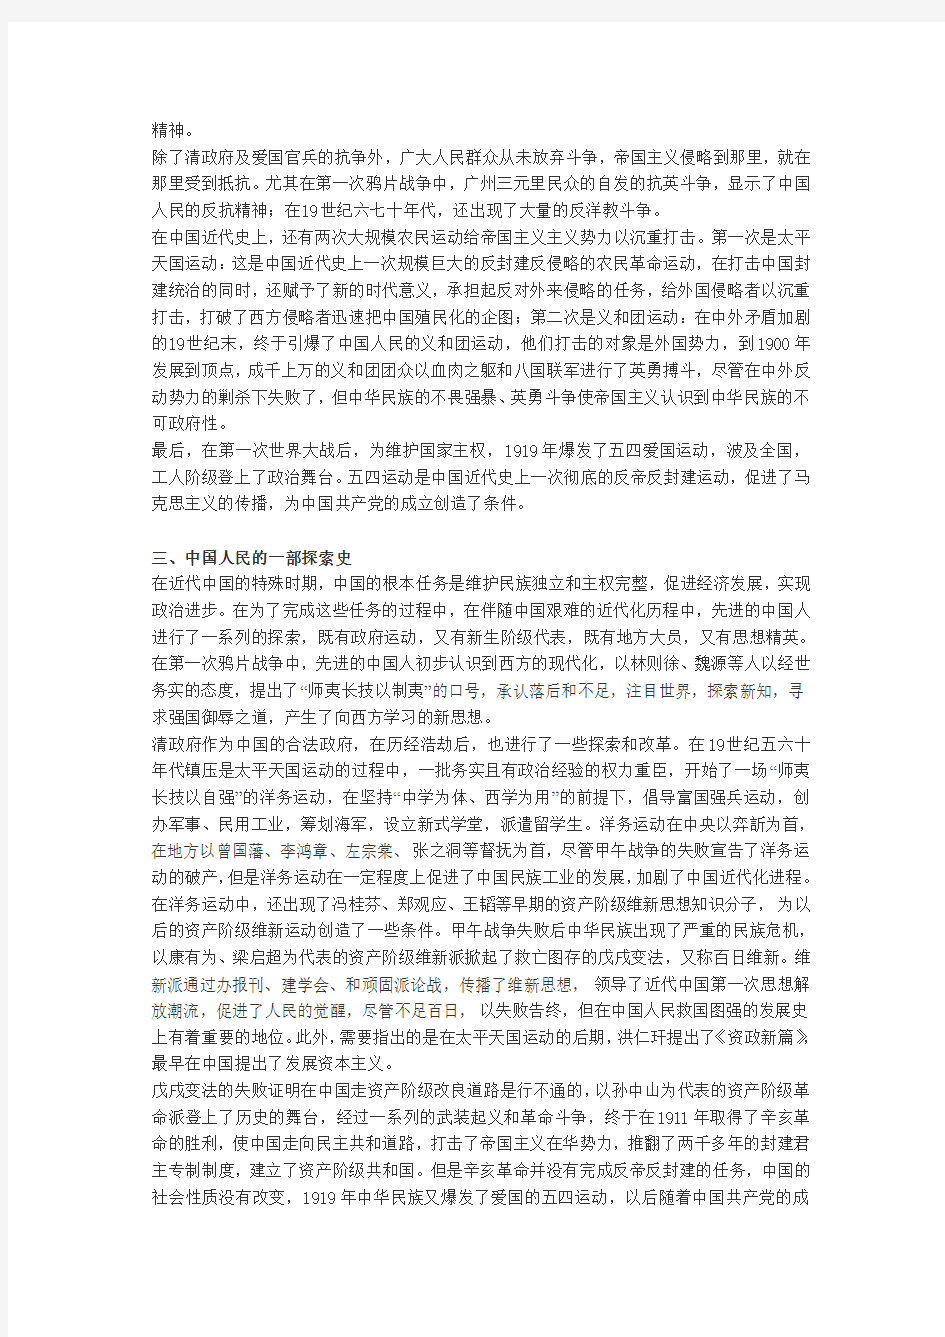 完整word版,中国近代史教学的三条主线